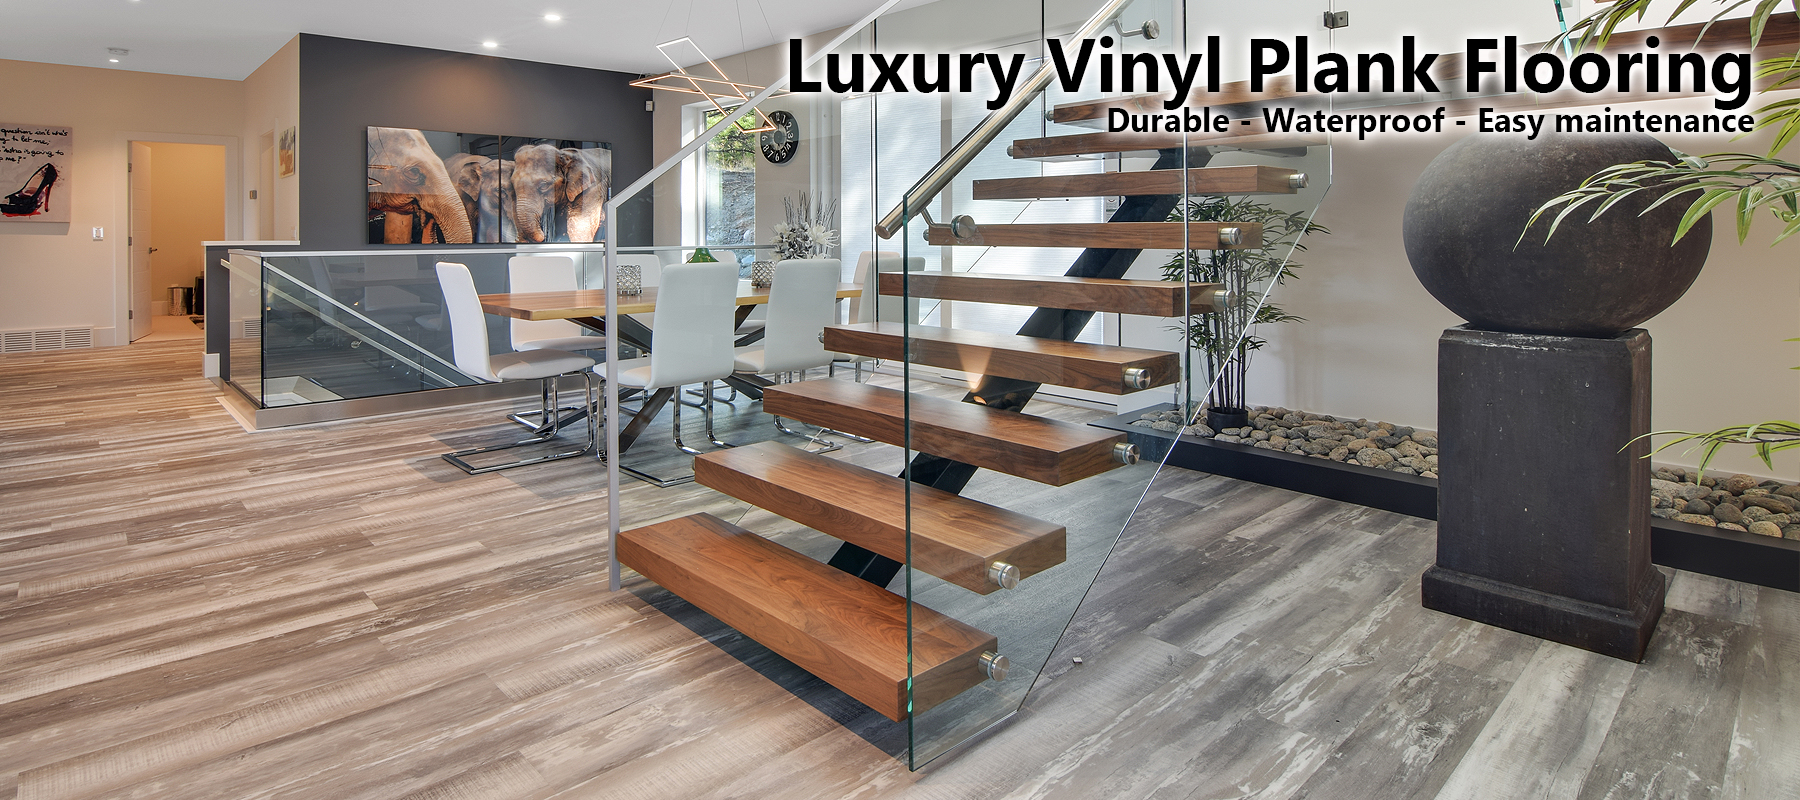 Luxury Vinyl Plank Flooring Sierra, Is Luxury Vinyl Plank Flooring Durable